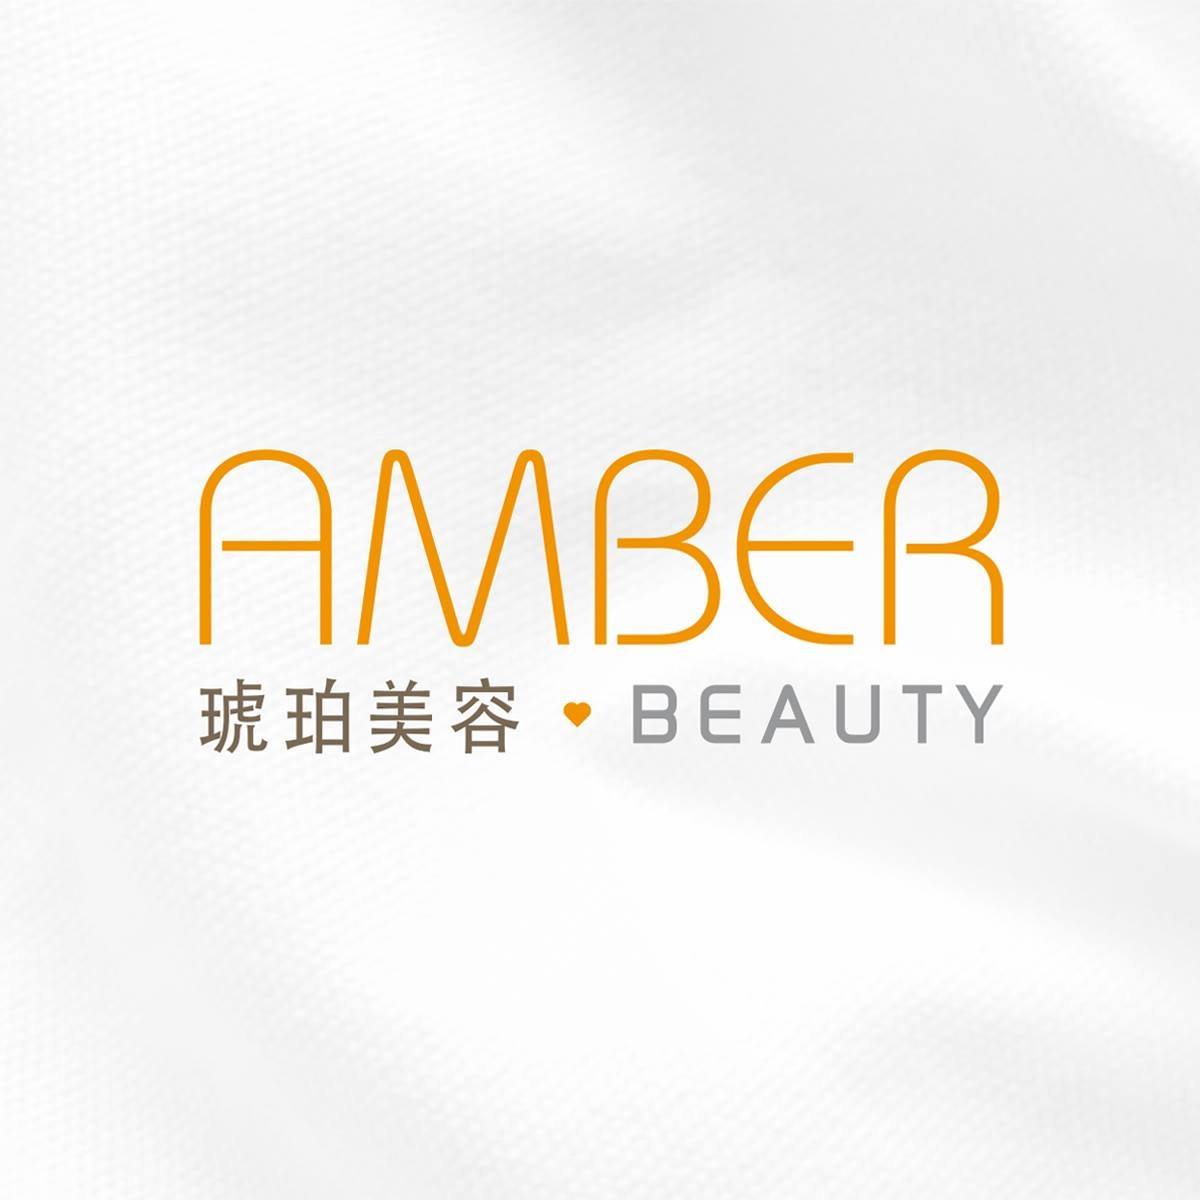 美容院 Beauty Salon 集团琥珀美容 Amber Beauty (荃灣店) @ 香港美容网 HK Beauty Salon